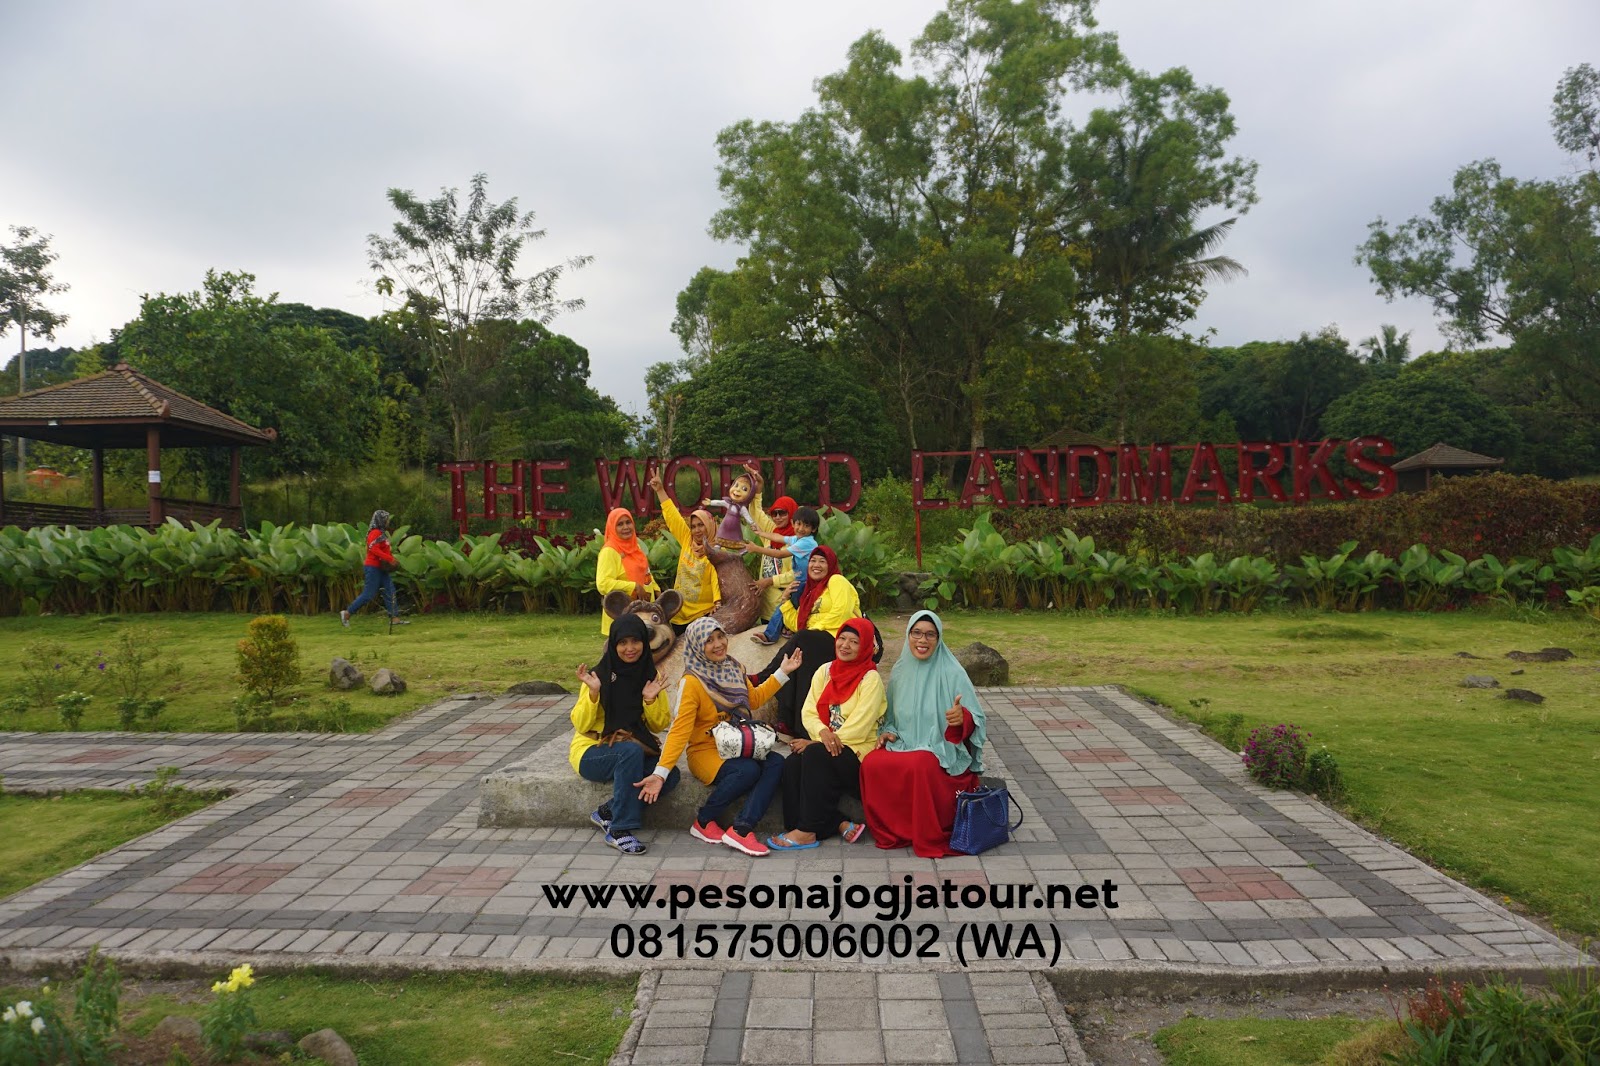 Merapi Park